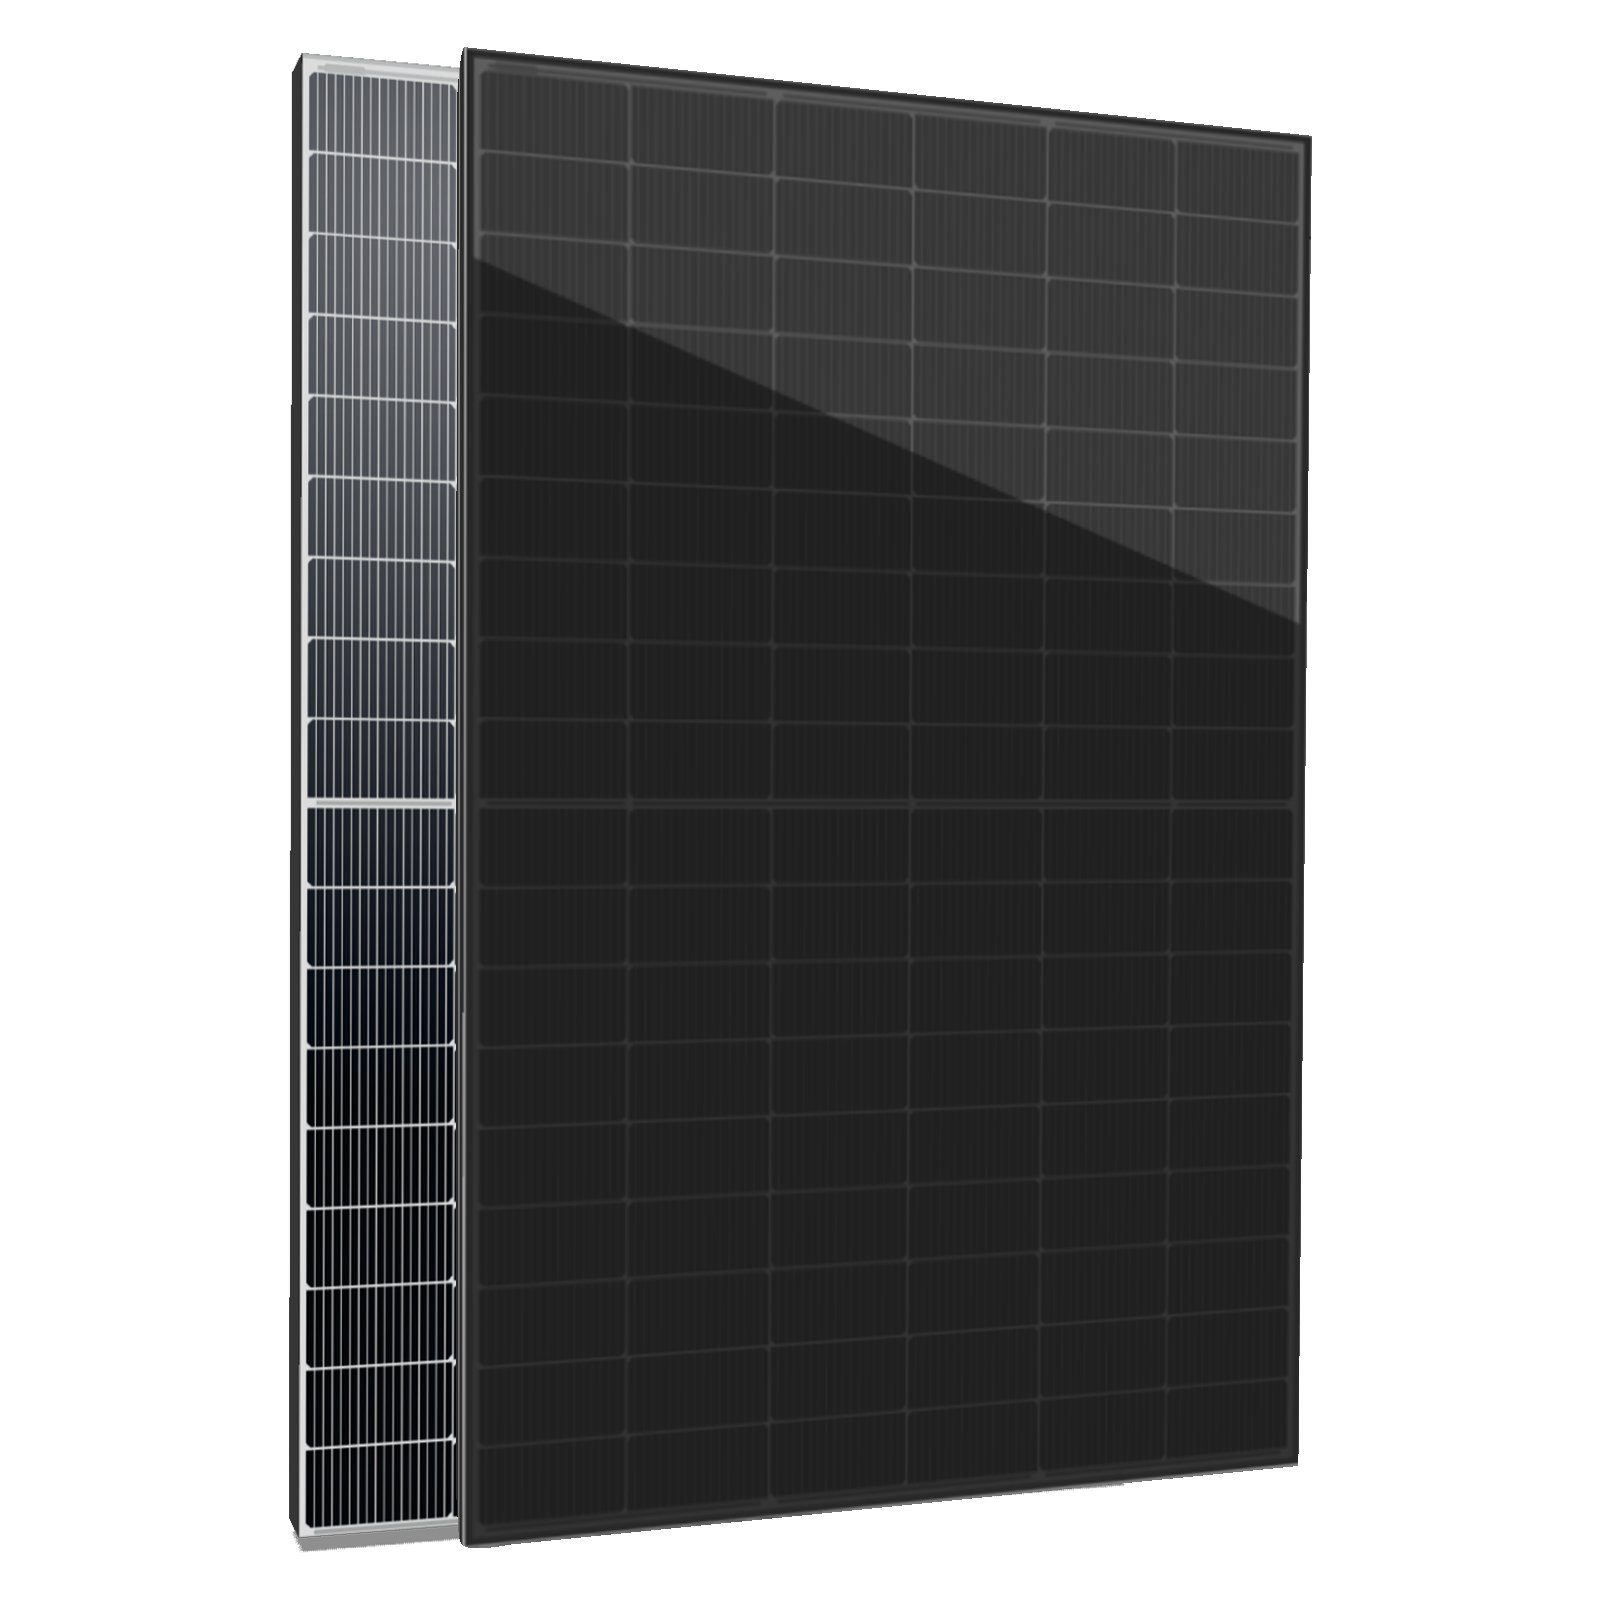 Glas-Glas enprovesolar 430W 2x Solarmodul bifazial Full Black Solaranlage